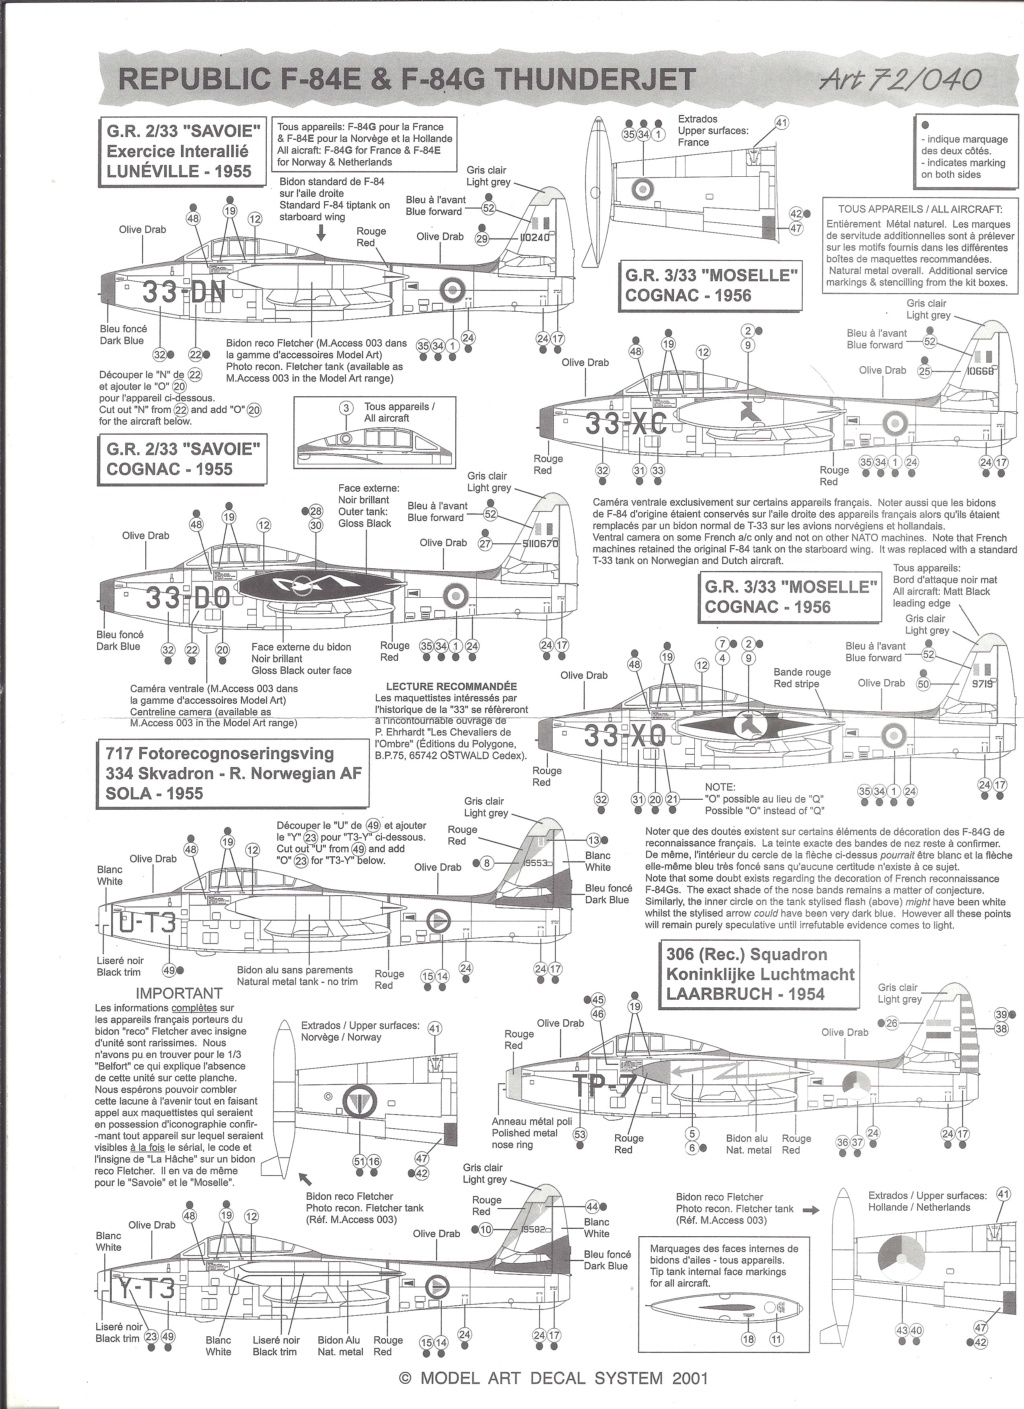 [MODEL ART] Planche de décals REPUBLIC F 84 E & G THUNDERJET - BAe HAWK Mk 115 1/72ème Réf 72-040 Model_33